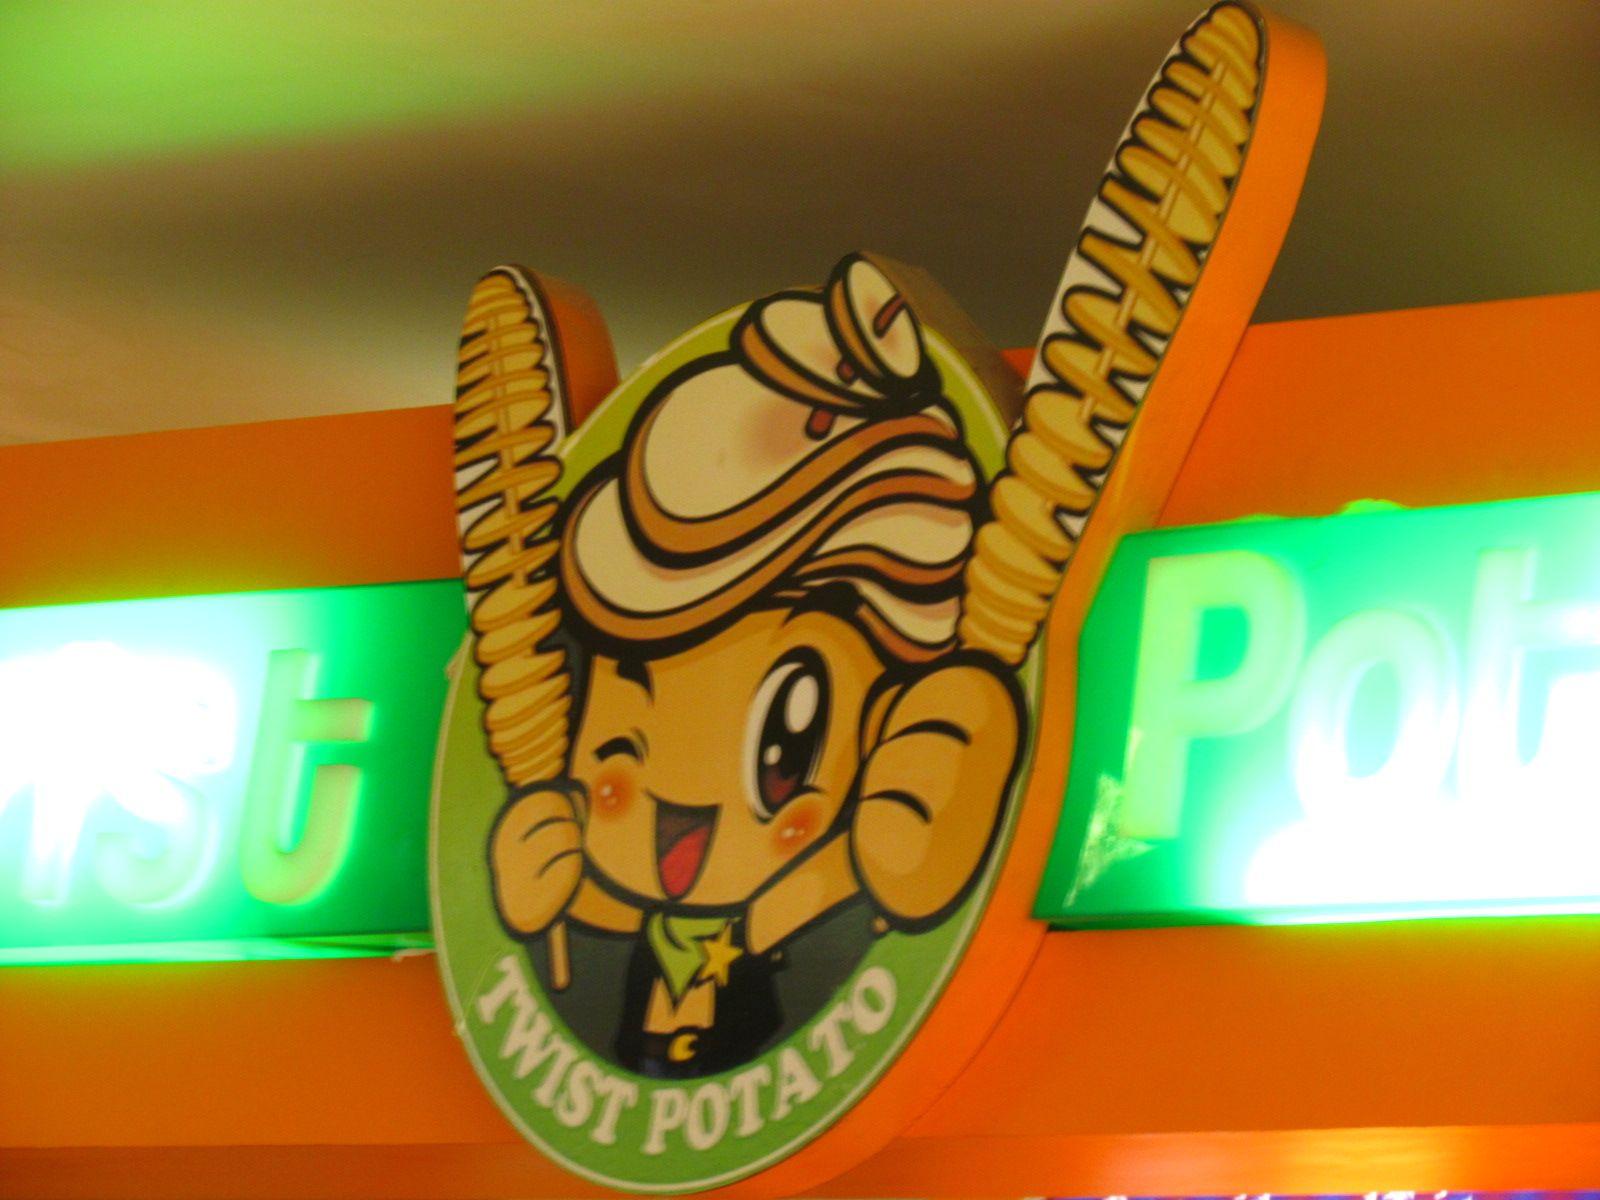 Potato Swirl Logo - Twist Potato (food Court DLF Saket, Delhi)